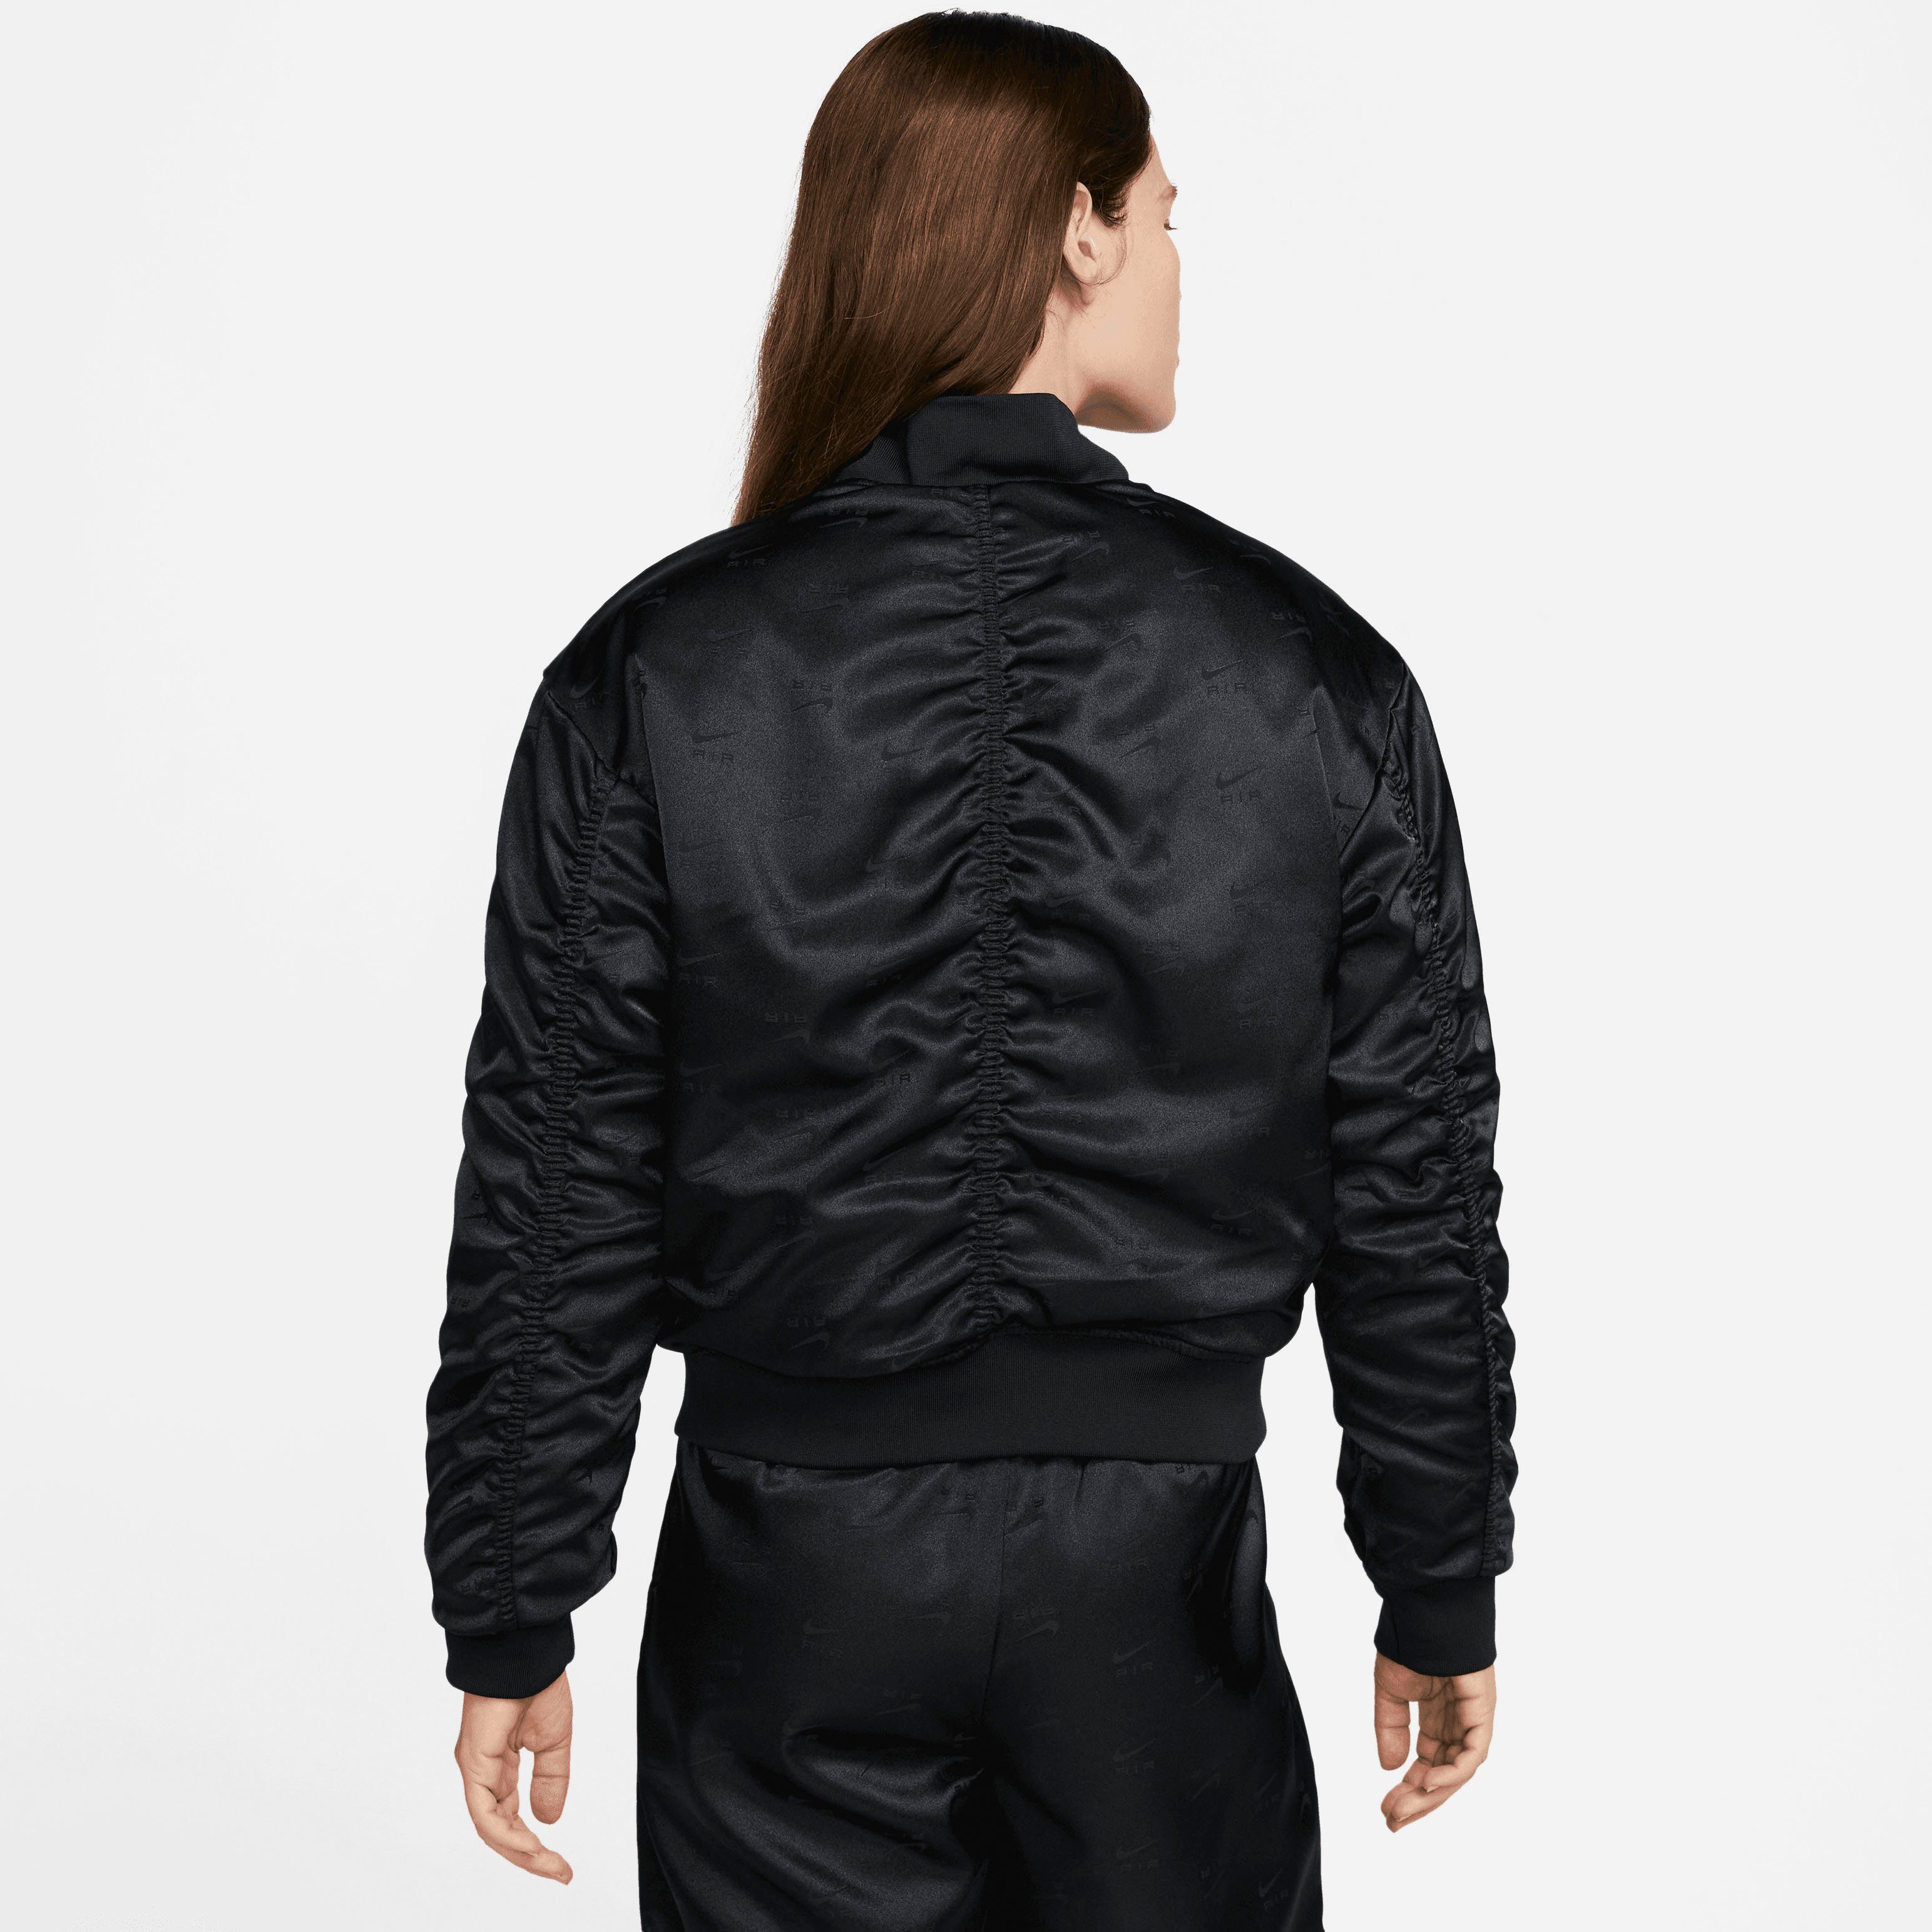 Nike Blouson Air Women's Bomber Jacket Sportswear